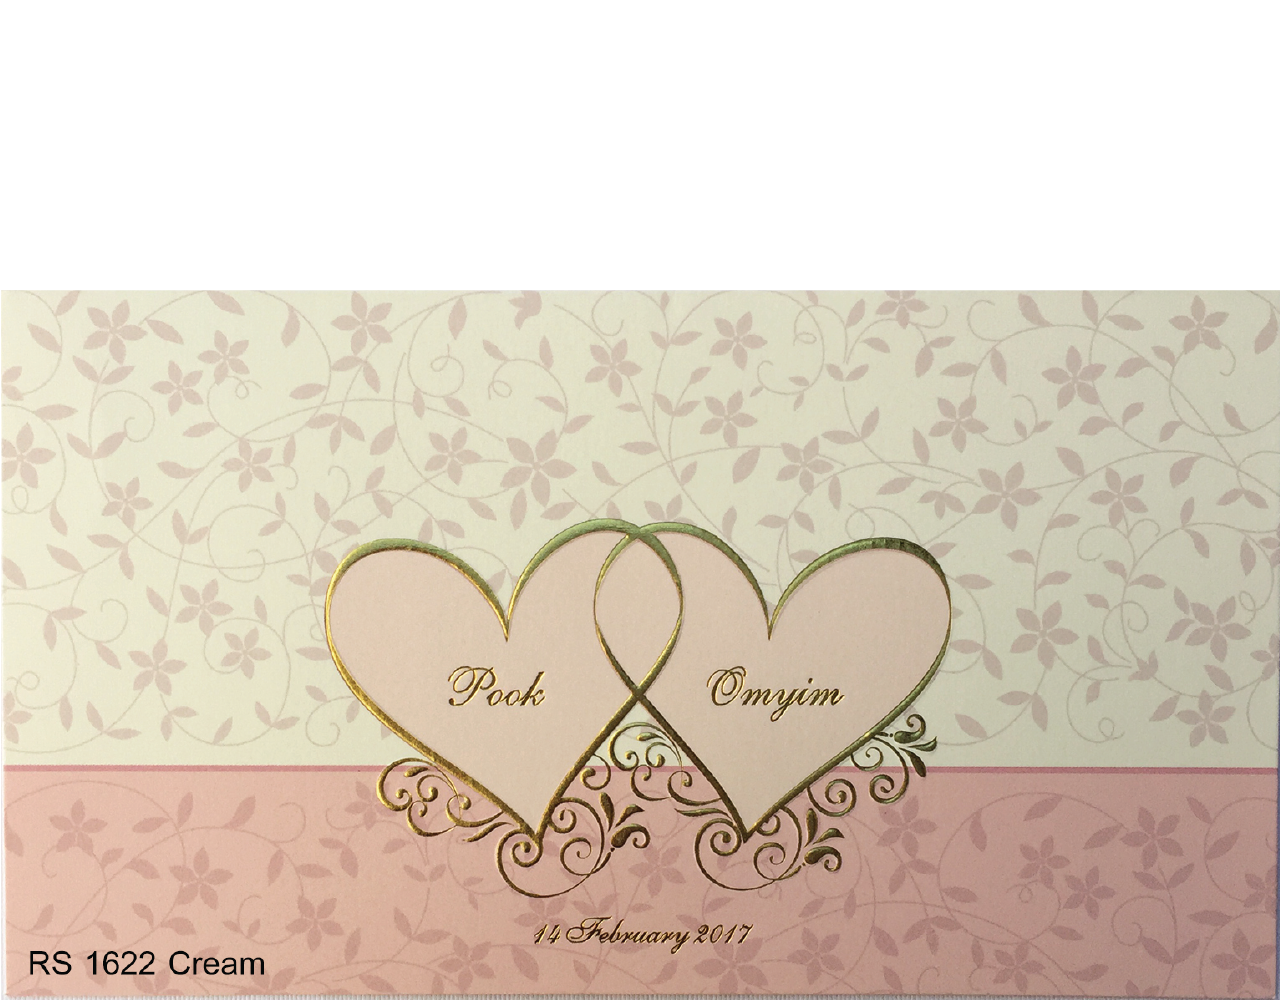 การ์ดแต่งงาน การ์ดเชิญแต่งงาน สีครีมชมพู ลายดอกไม้ ปั๊มนูนรูปหัวใจ wedding card 4x7.5 inch RS.1622